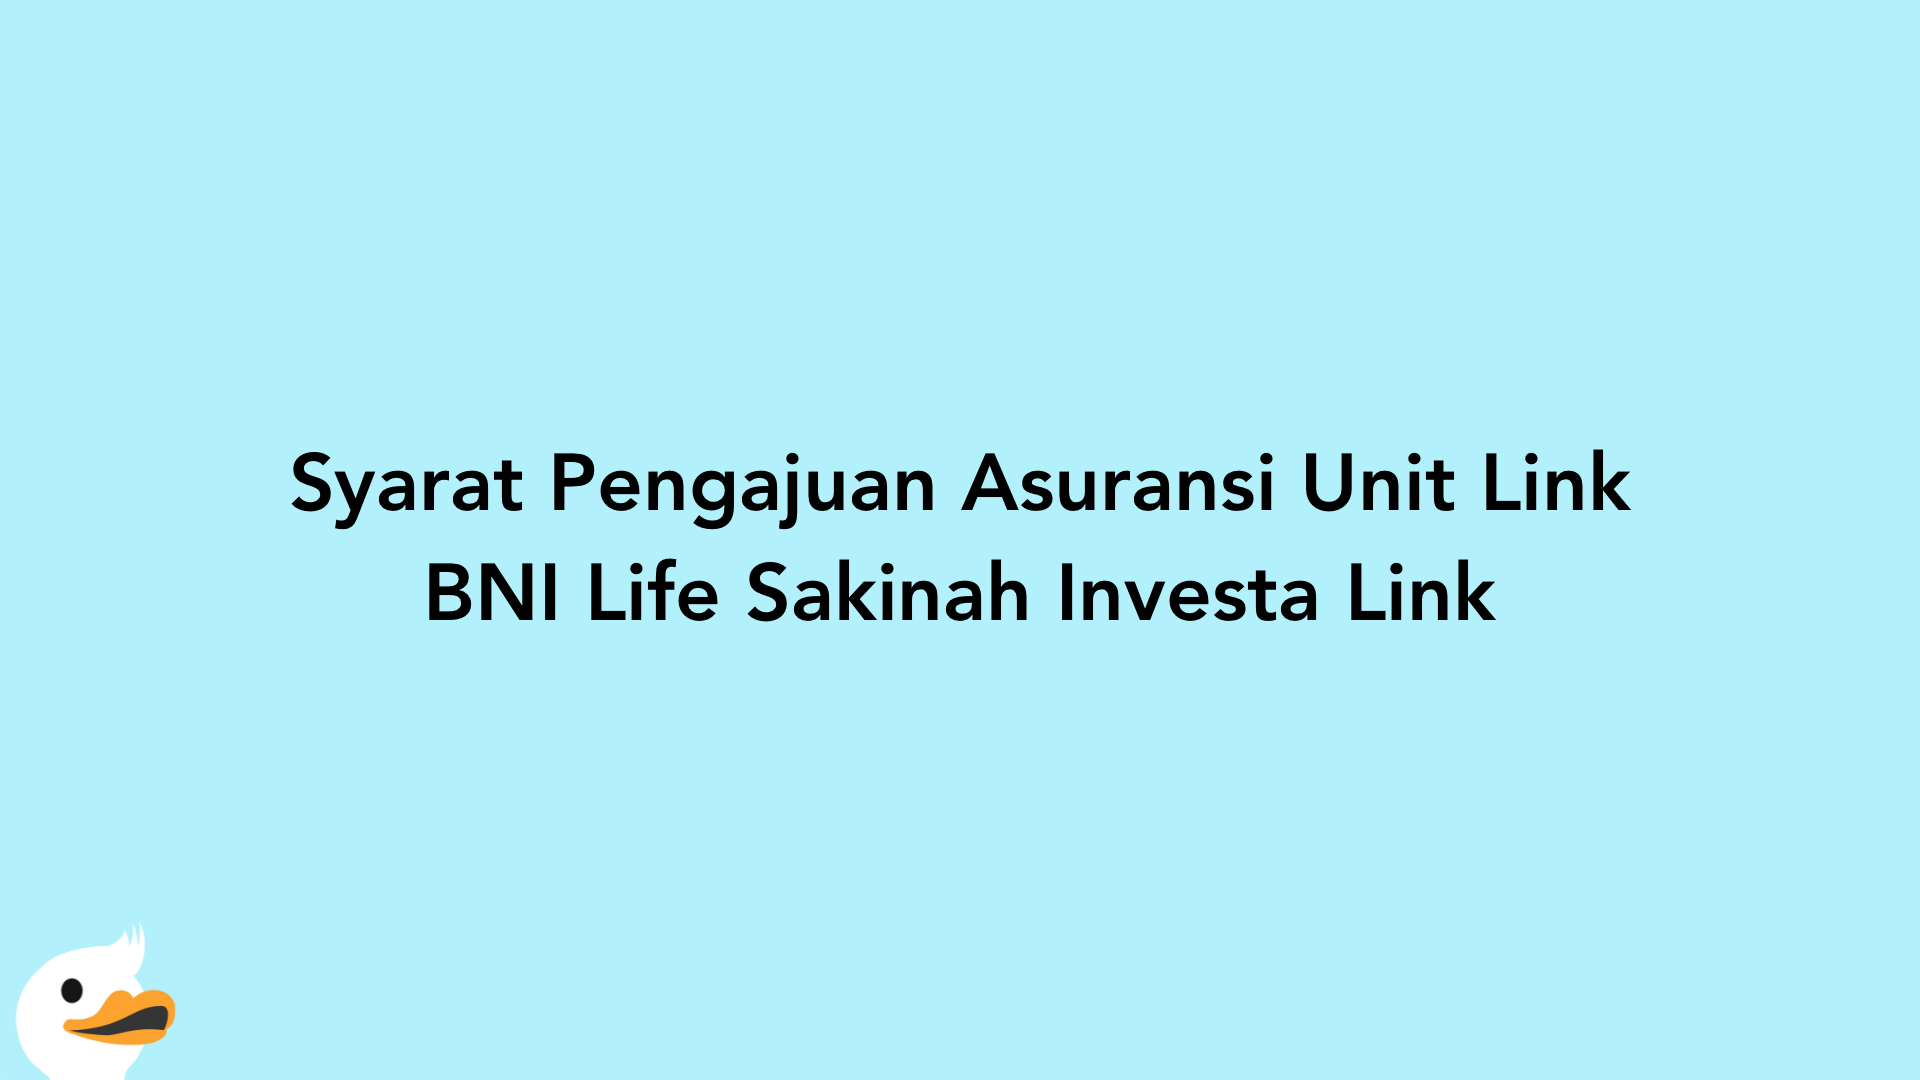 Syarat Pengajuan Asuransi Unit Link BNI Life Sakinah Investa Link